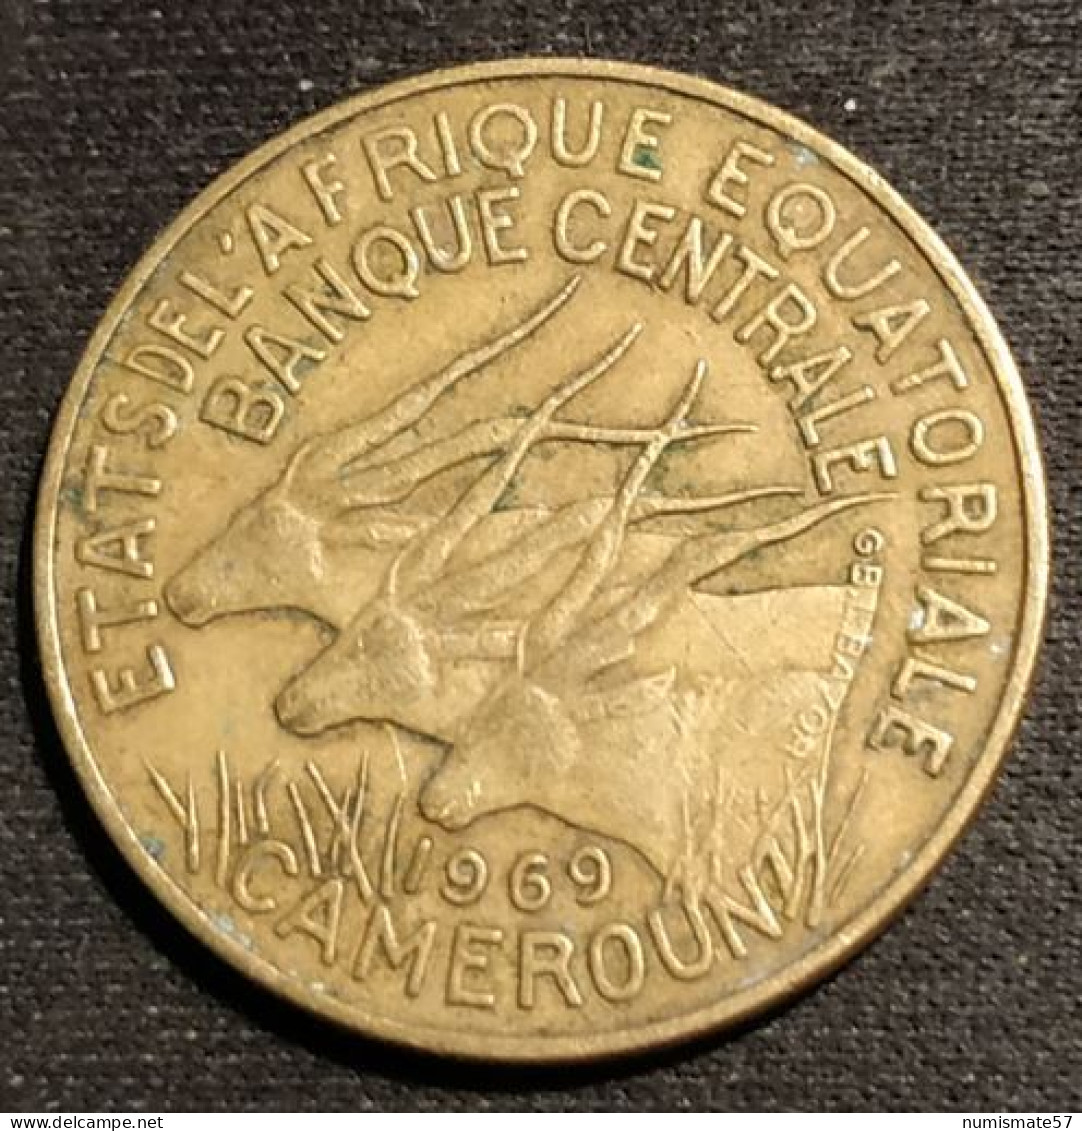 CAMEROUN - ETATS DE L'AFRIQUE EQUATORIALE - 10 FRANCS 1969 - KM 2a - Kameroen